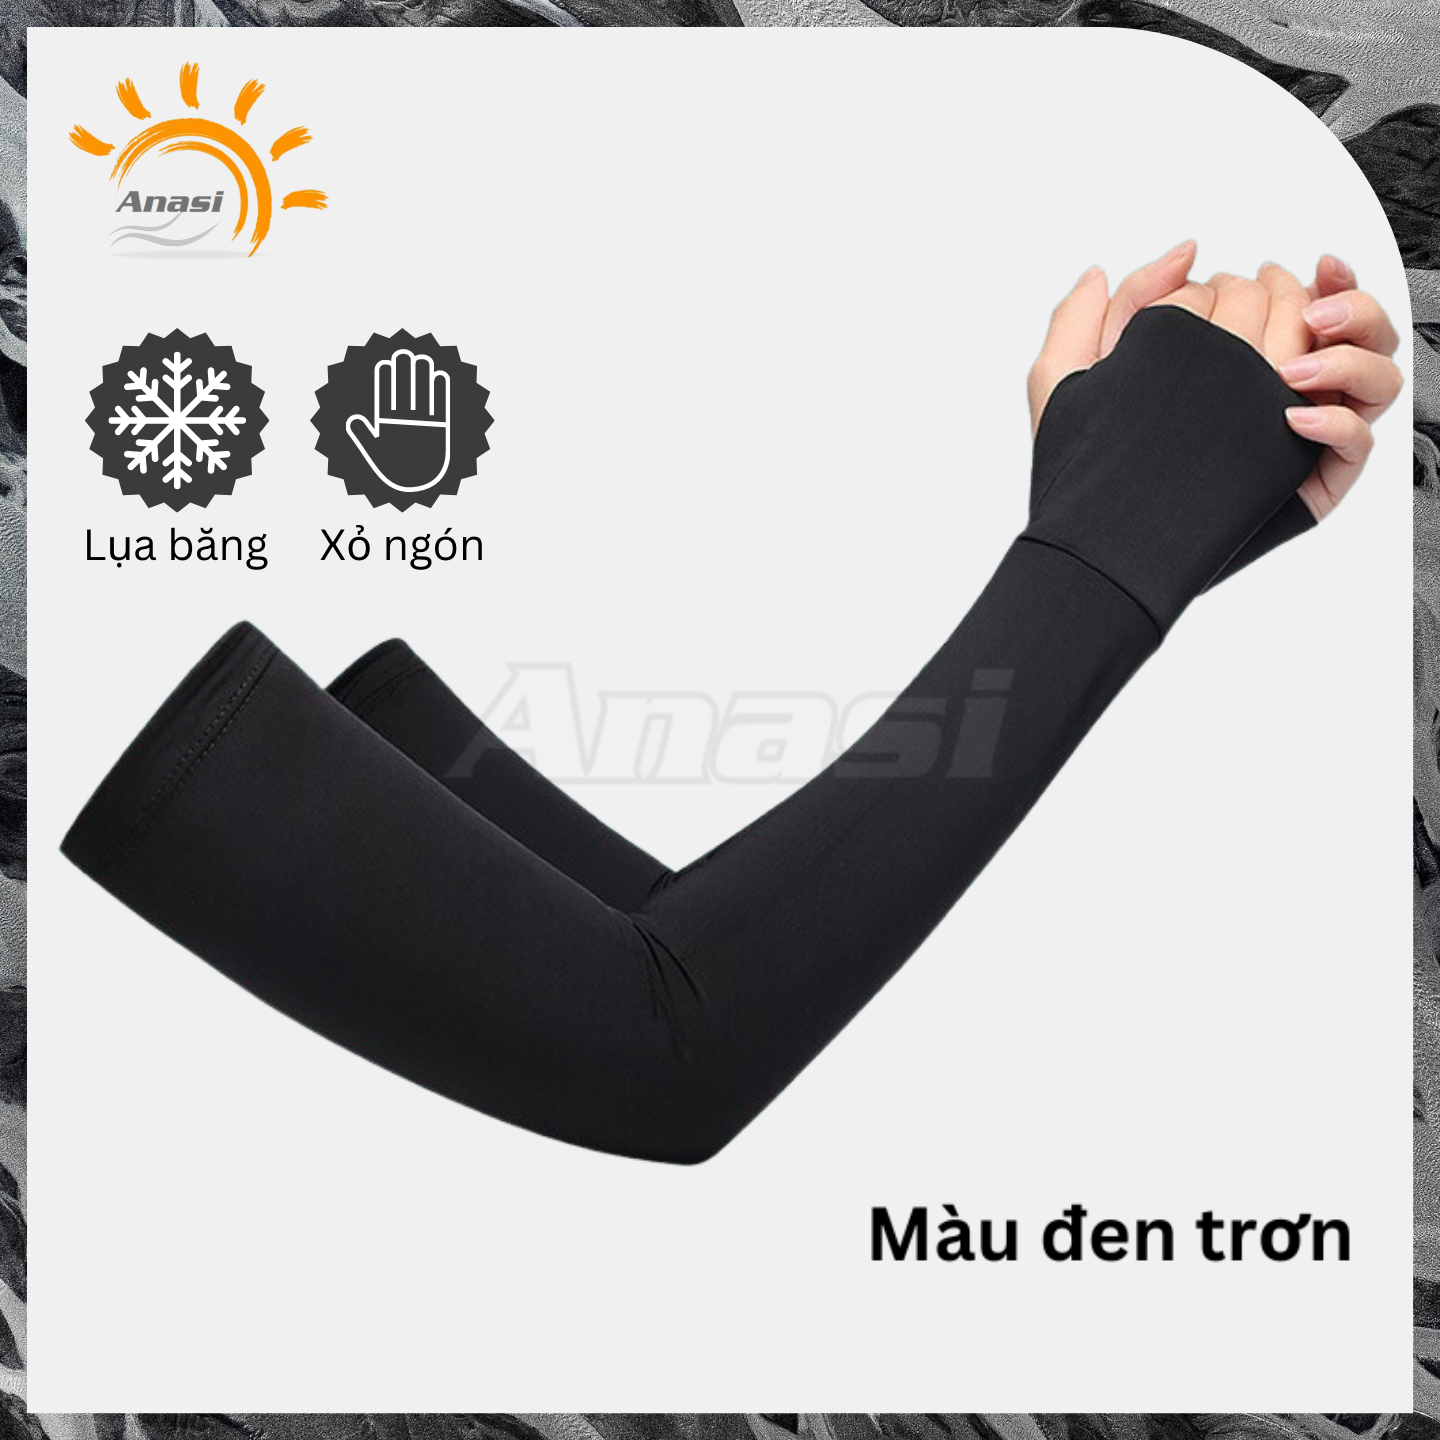 Găng tay chống nắng nam nữ phối 2 màu Anasi LB105 - Vải lụa băng dày mát - Chống tia UV SPF50+